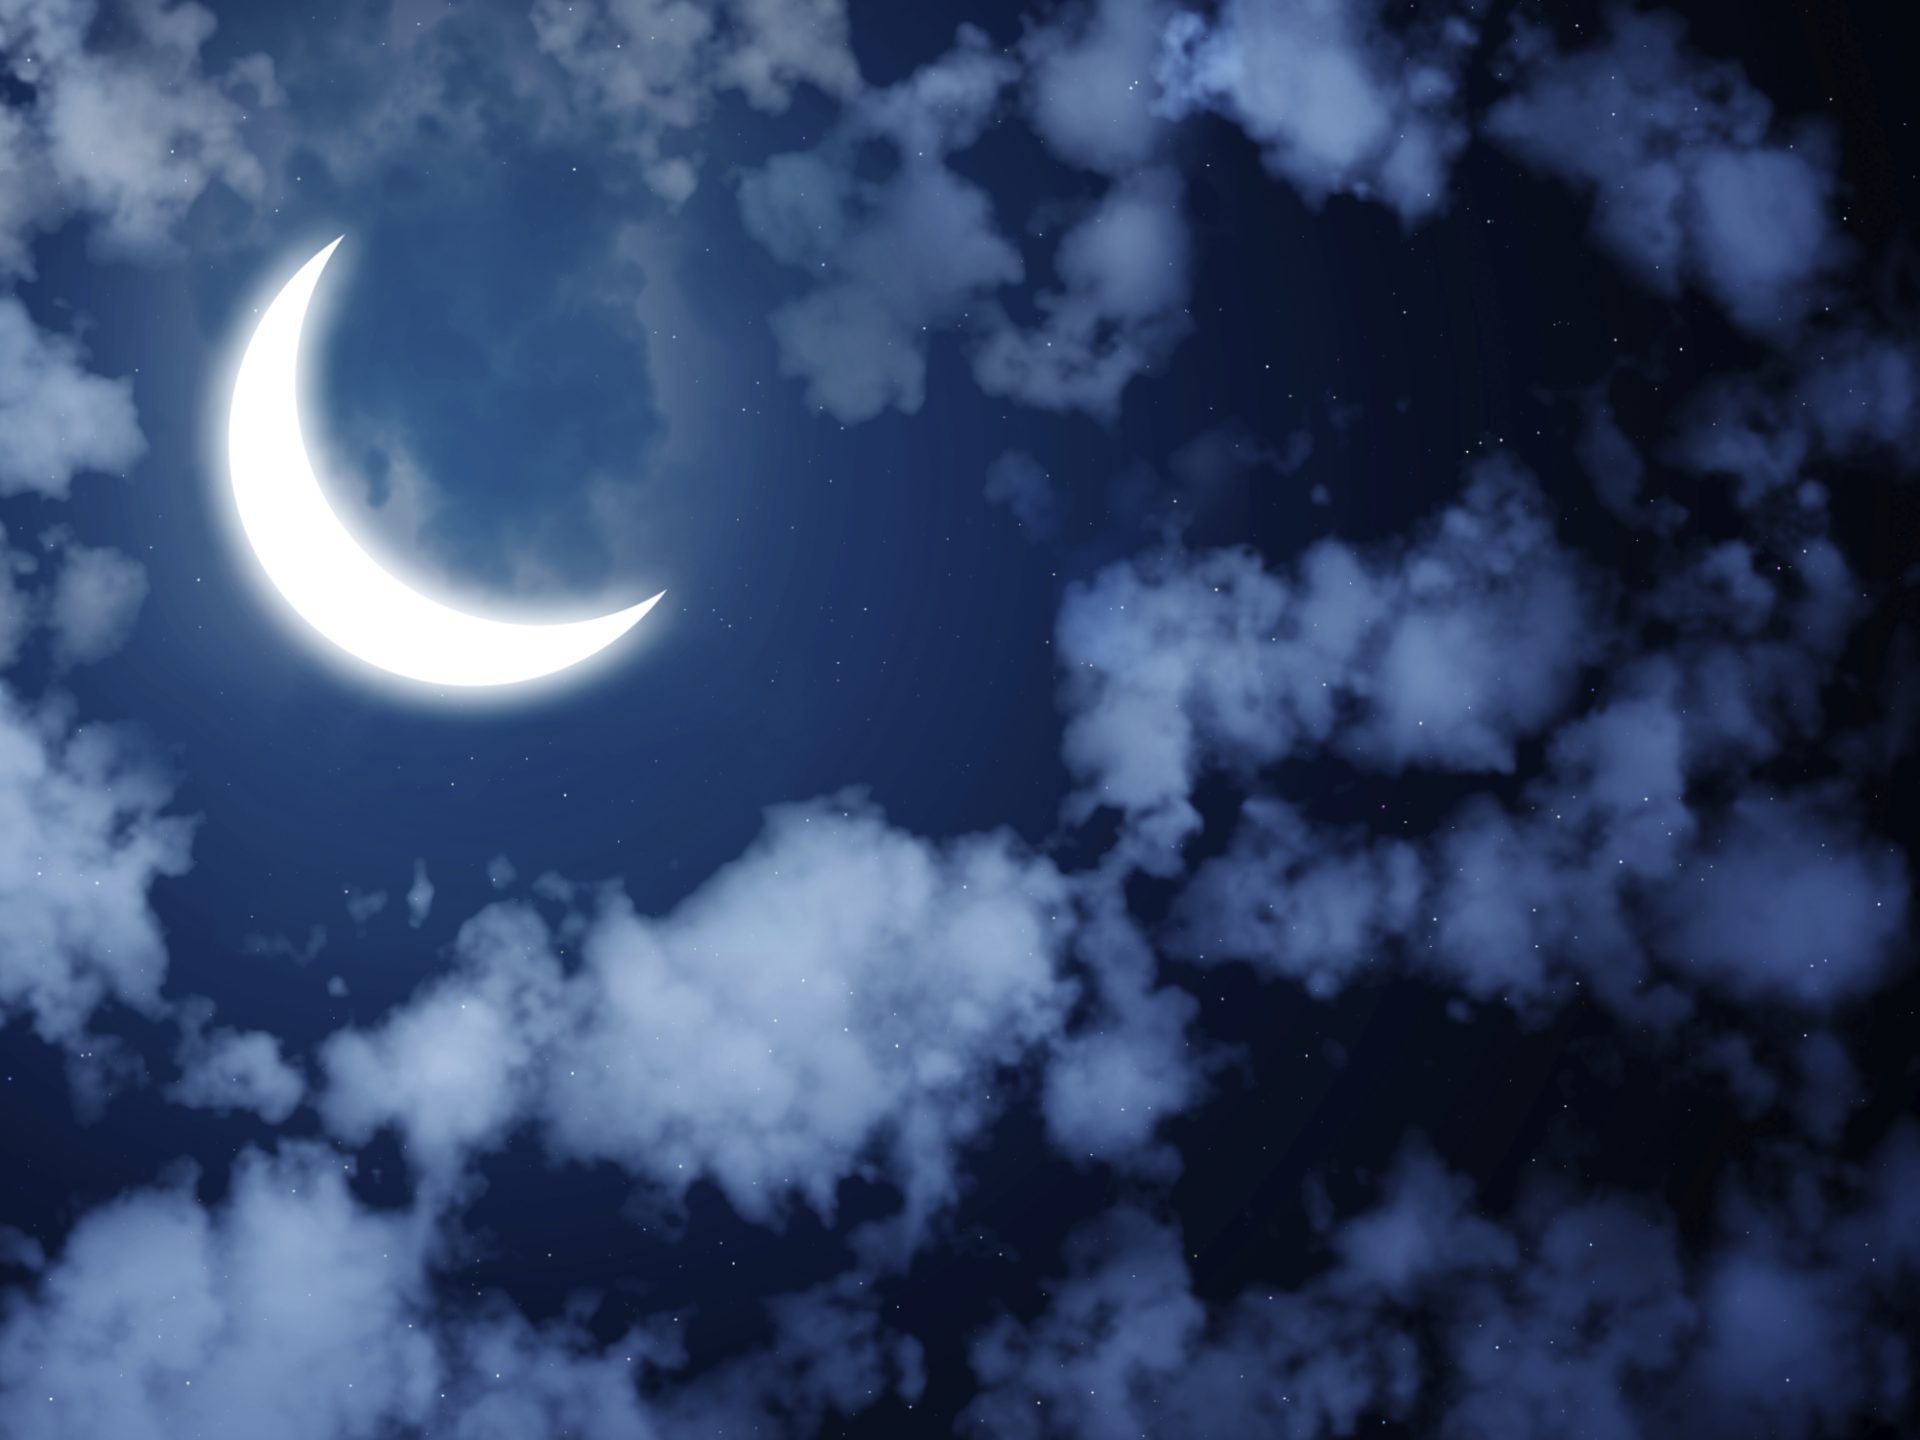 Good night's sleep Moon and clouds